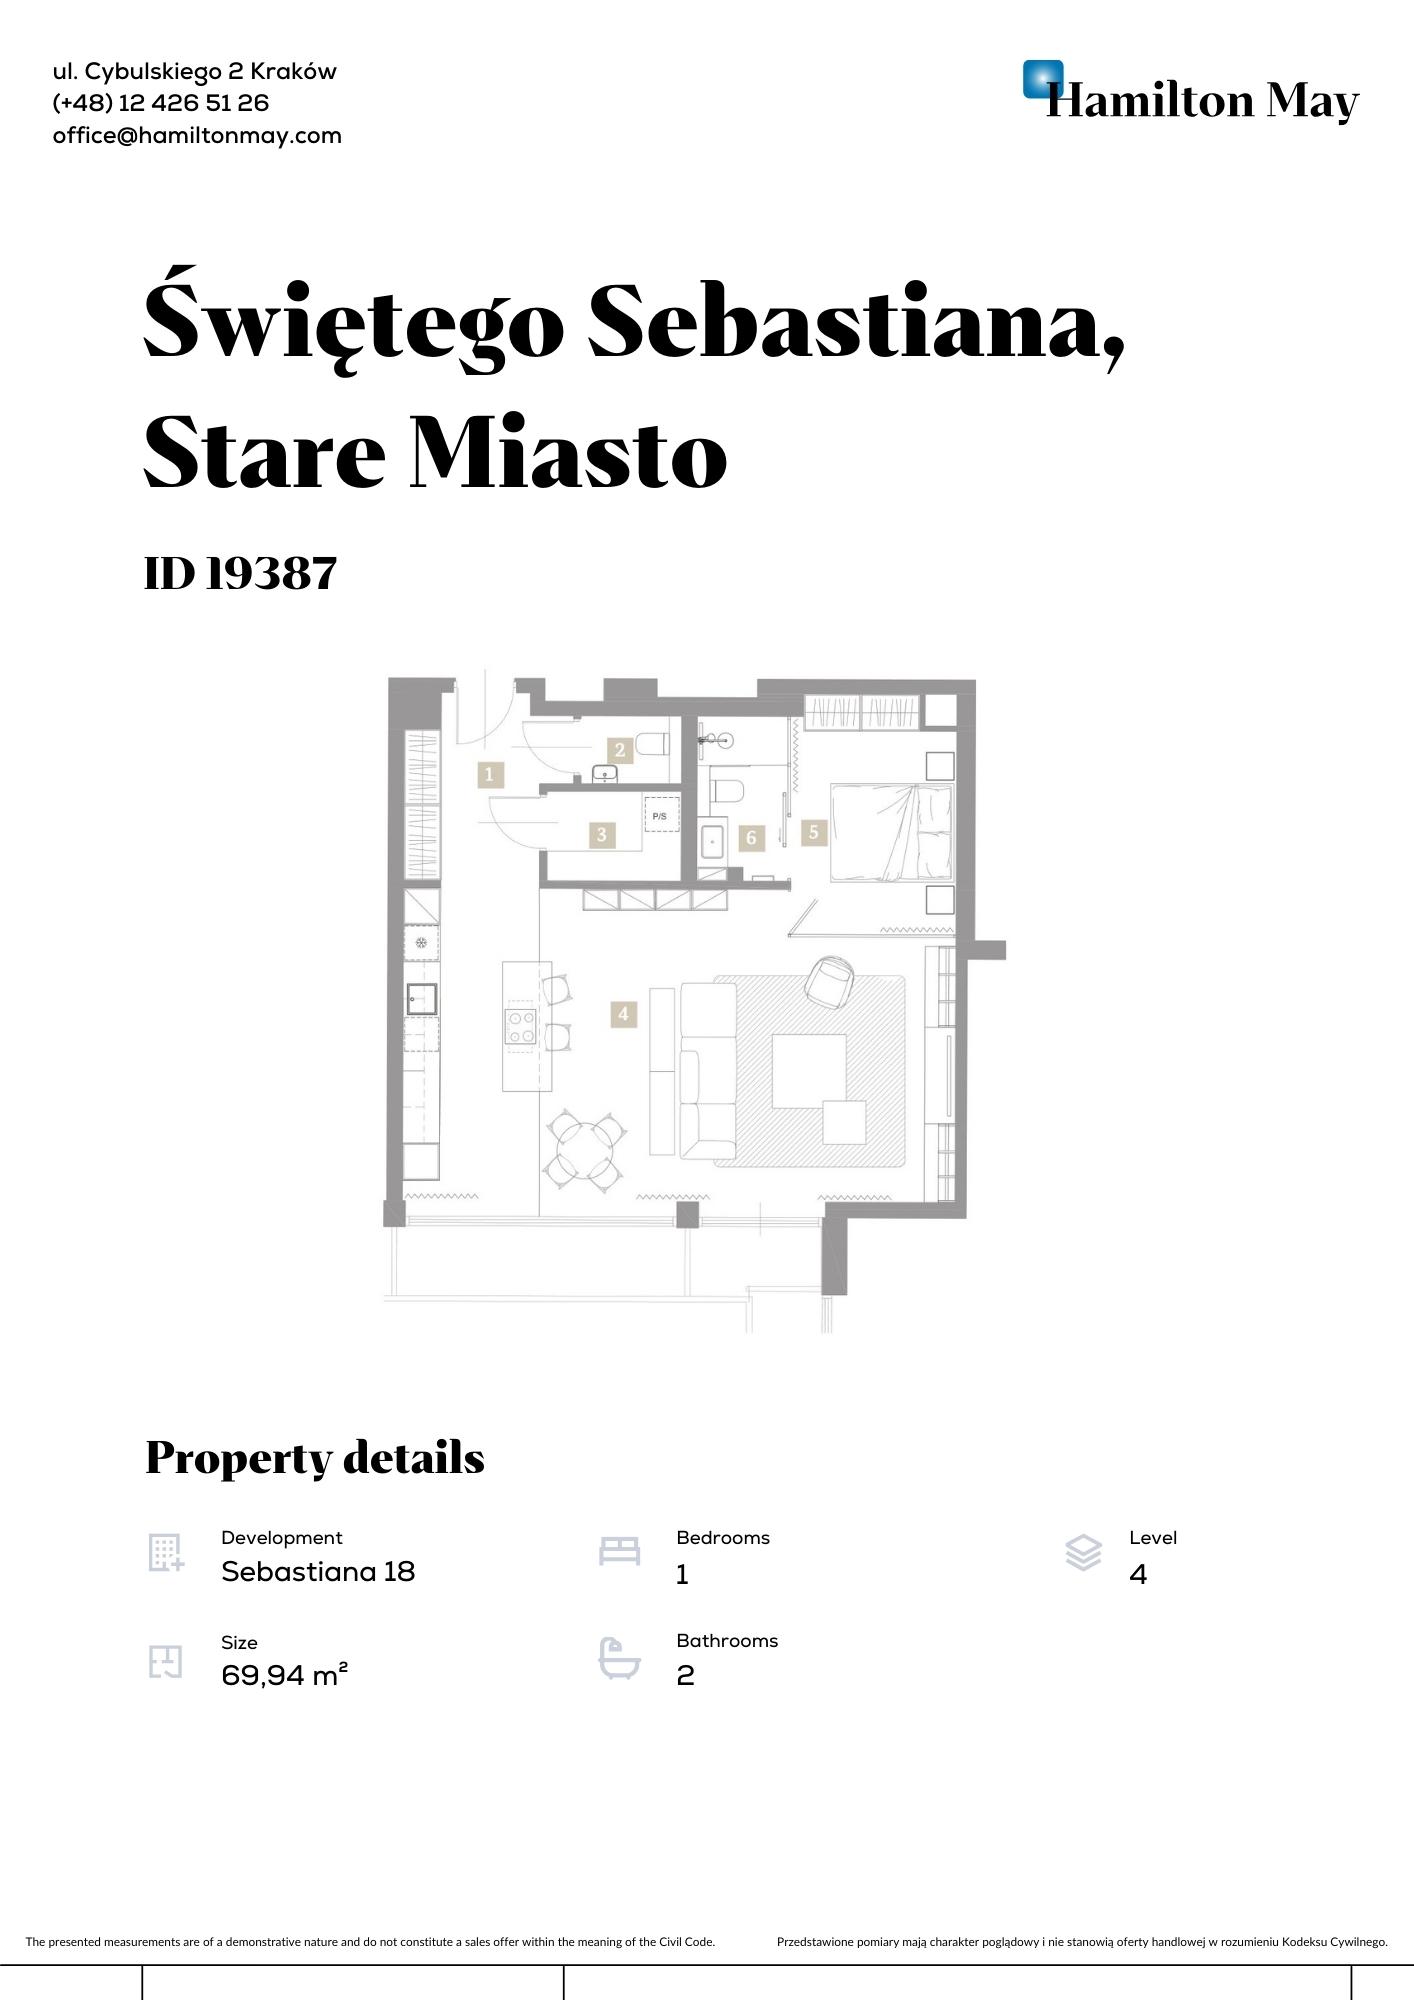 Квартира в престижній інвестиції на Św. Себастьяна 18 - plan